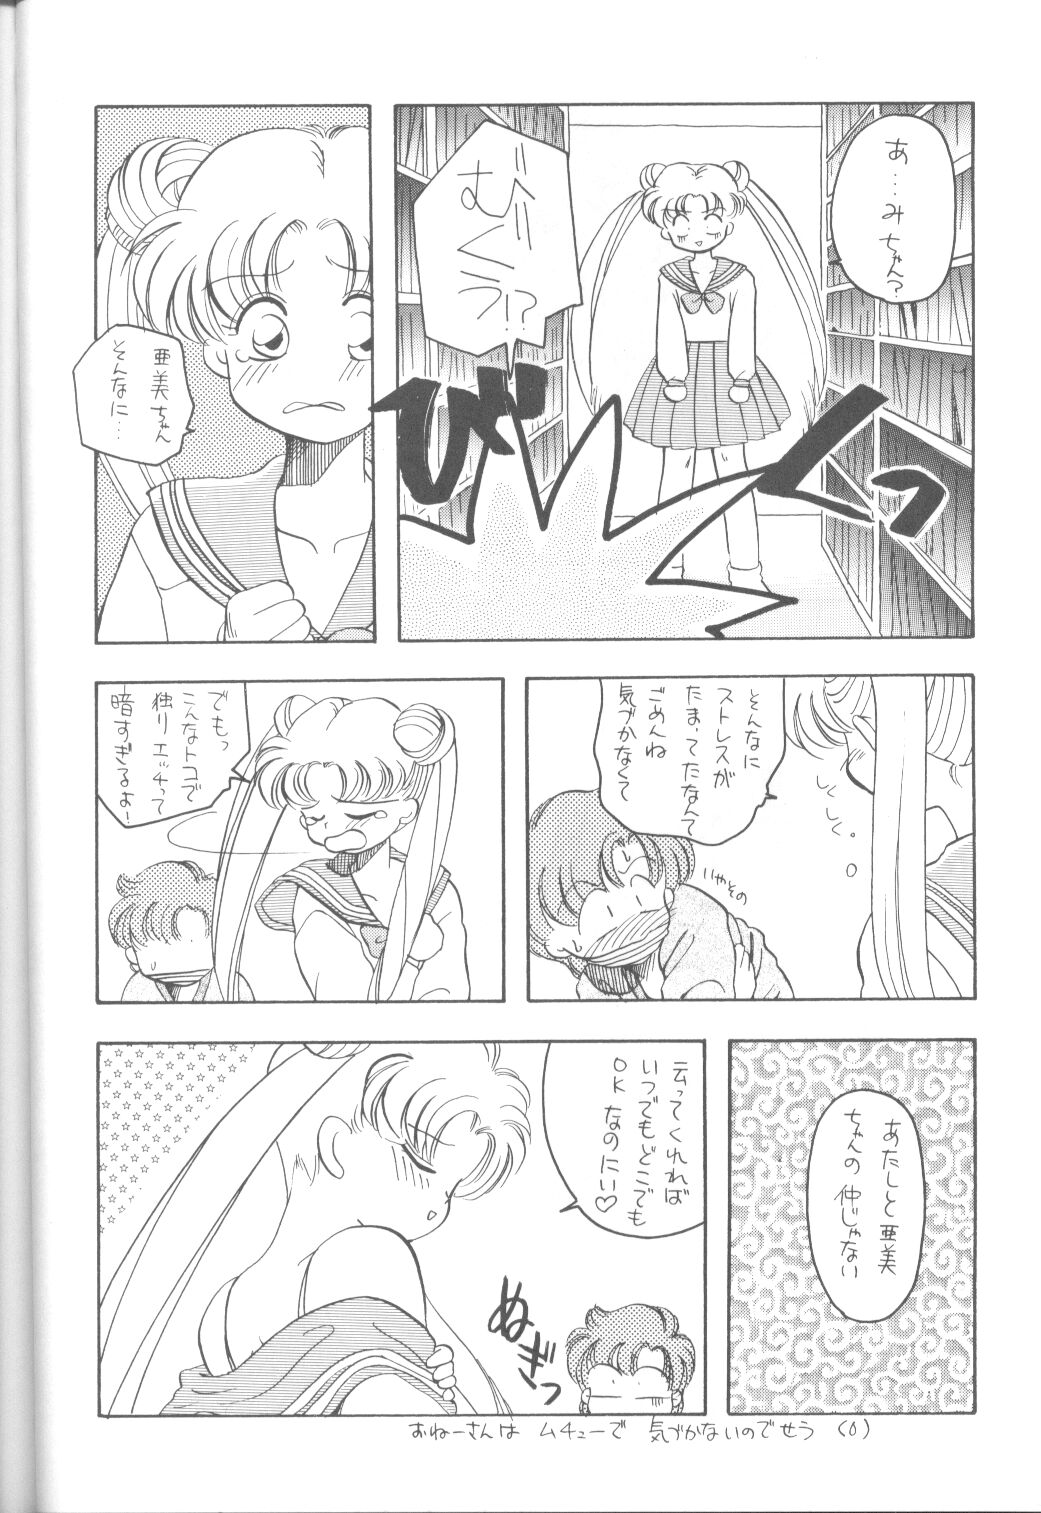 [Paradise City] Tabeta Kigasuru 9 (Sailor Moon) page 47 full